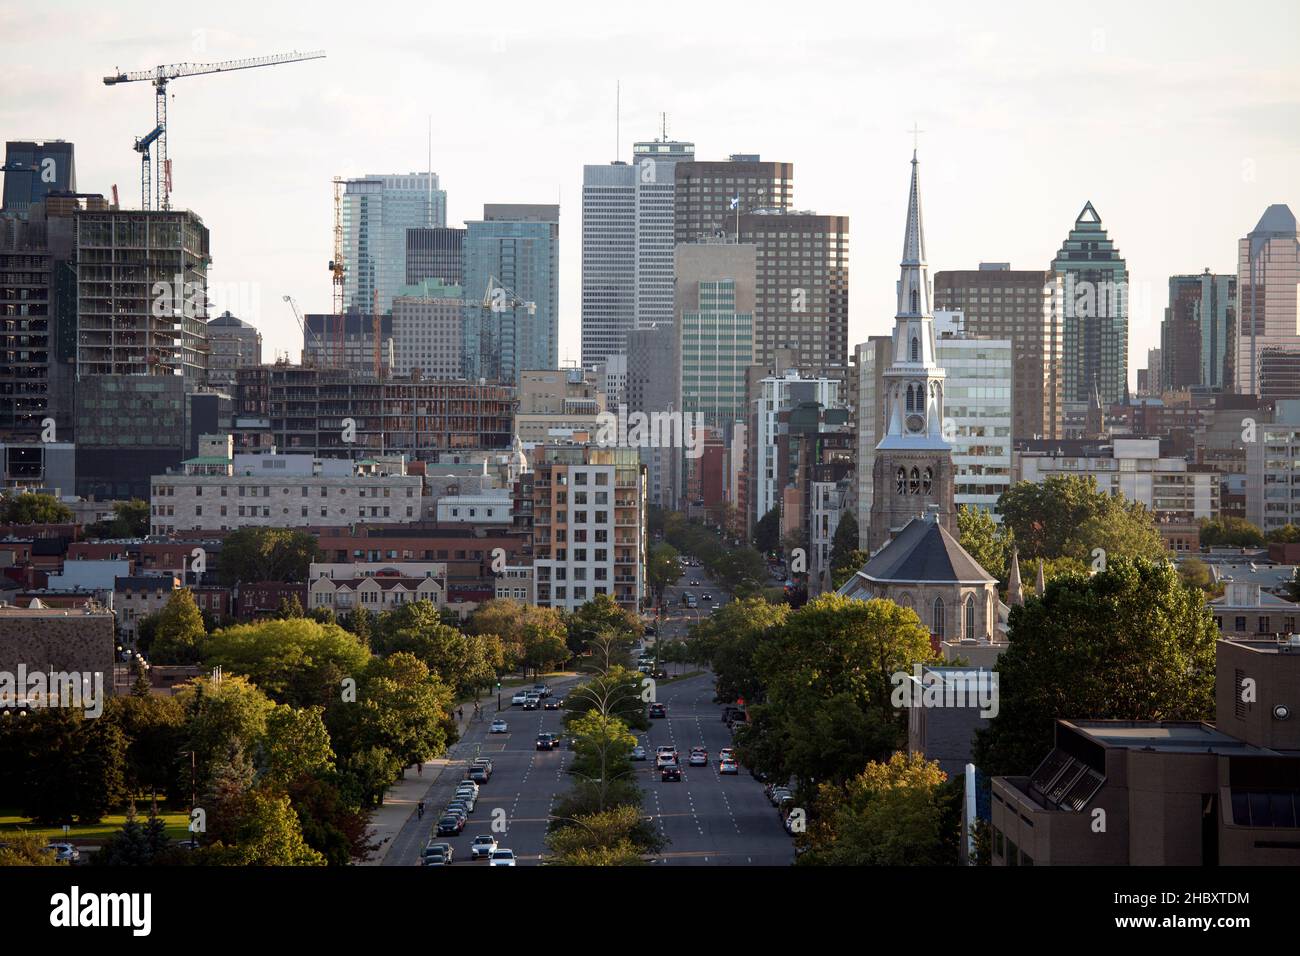 Erhöhter Blick auf die Stadt Quebec, Grünflächen, hohe Gebäude, große Straße und Bauarbeiten. Stockfoto